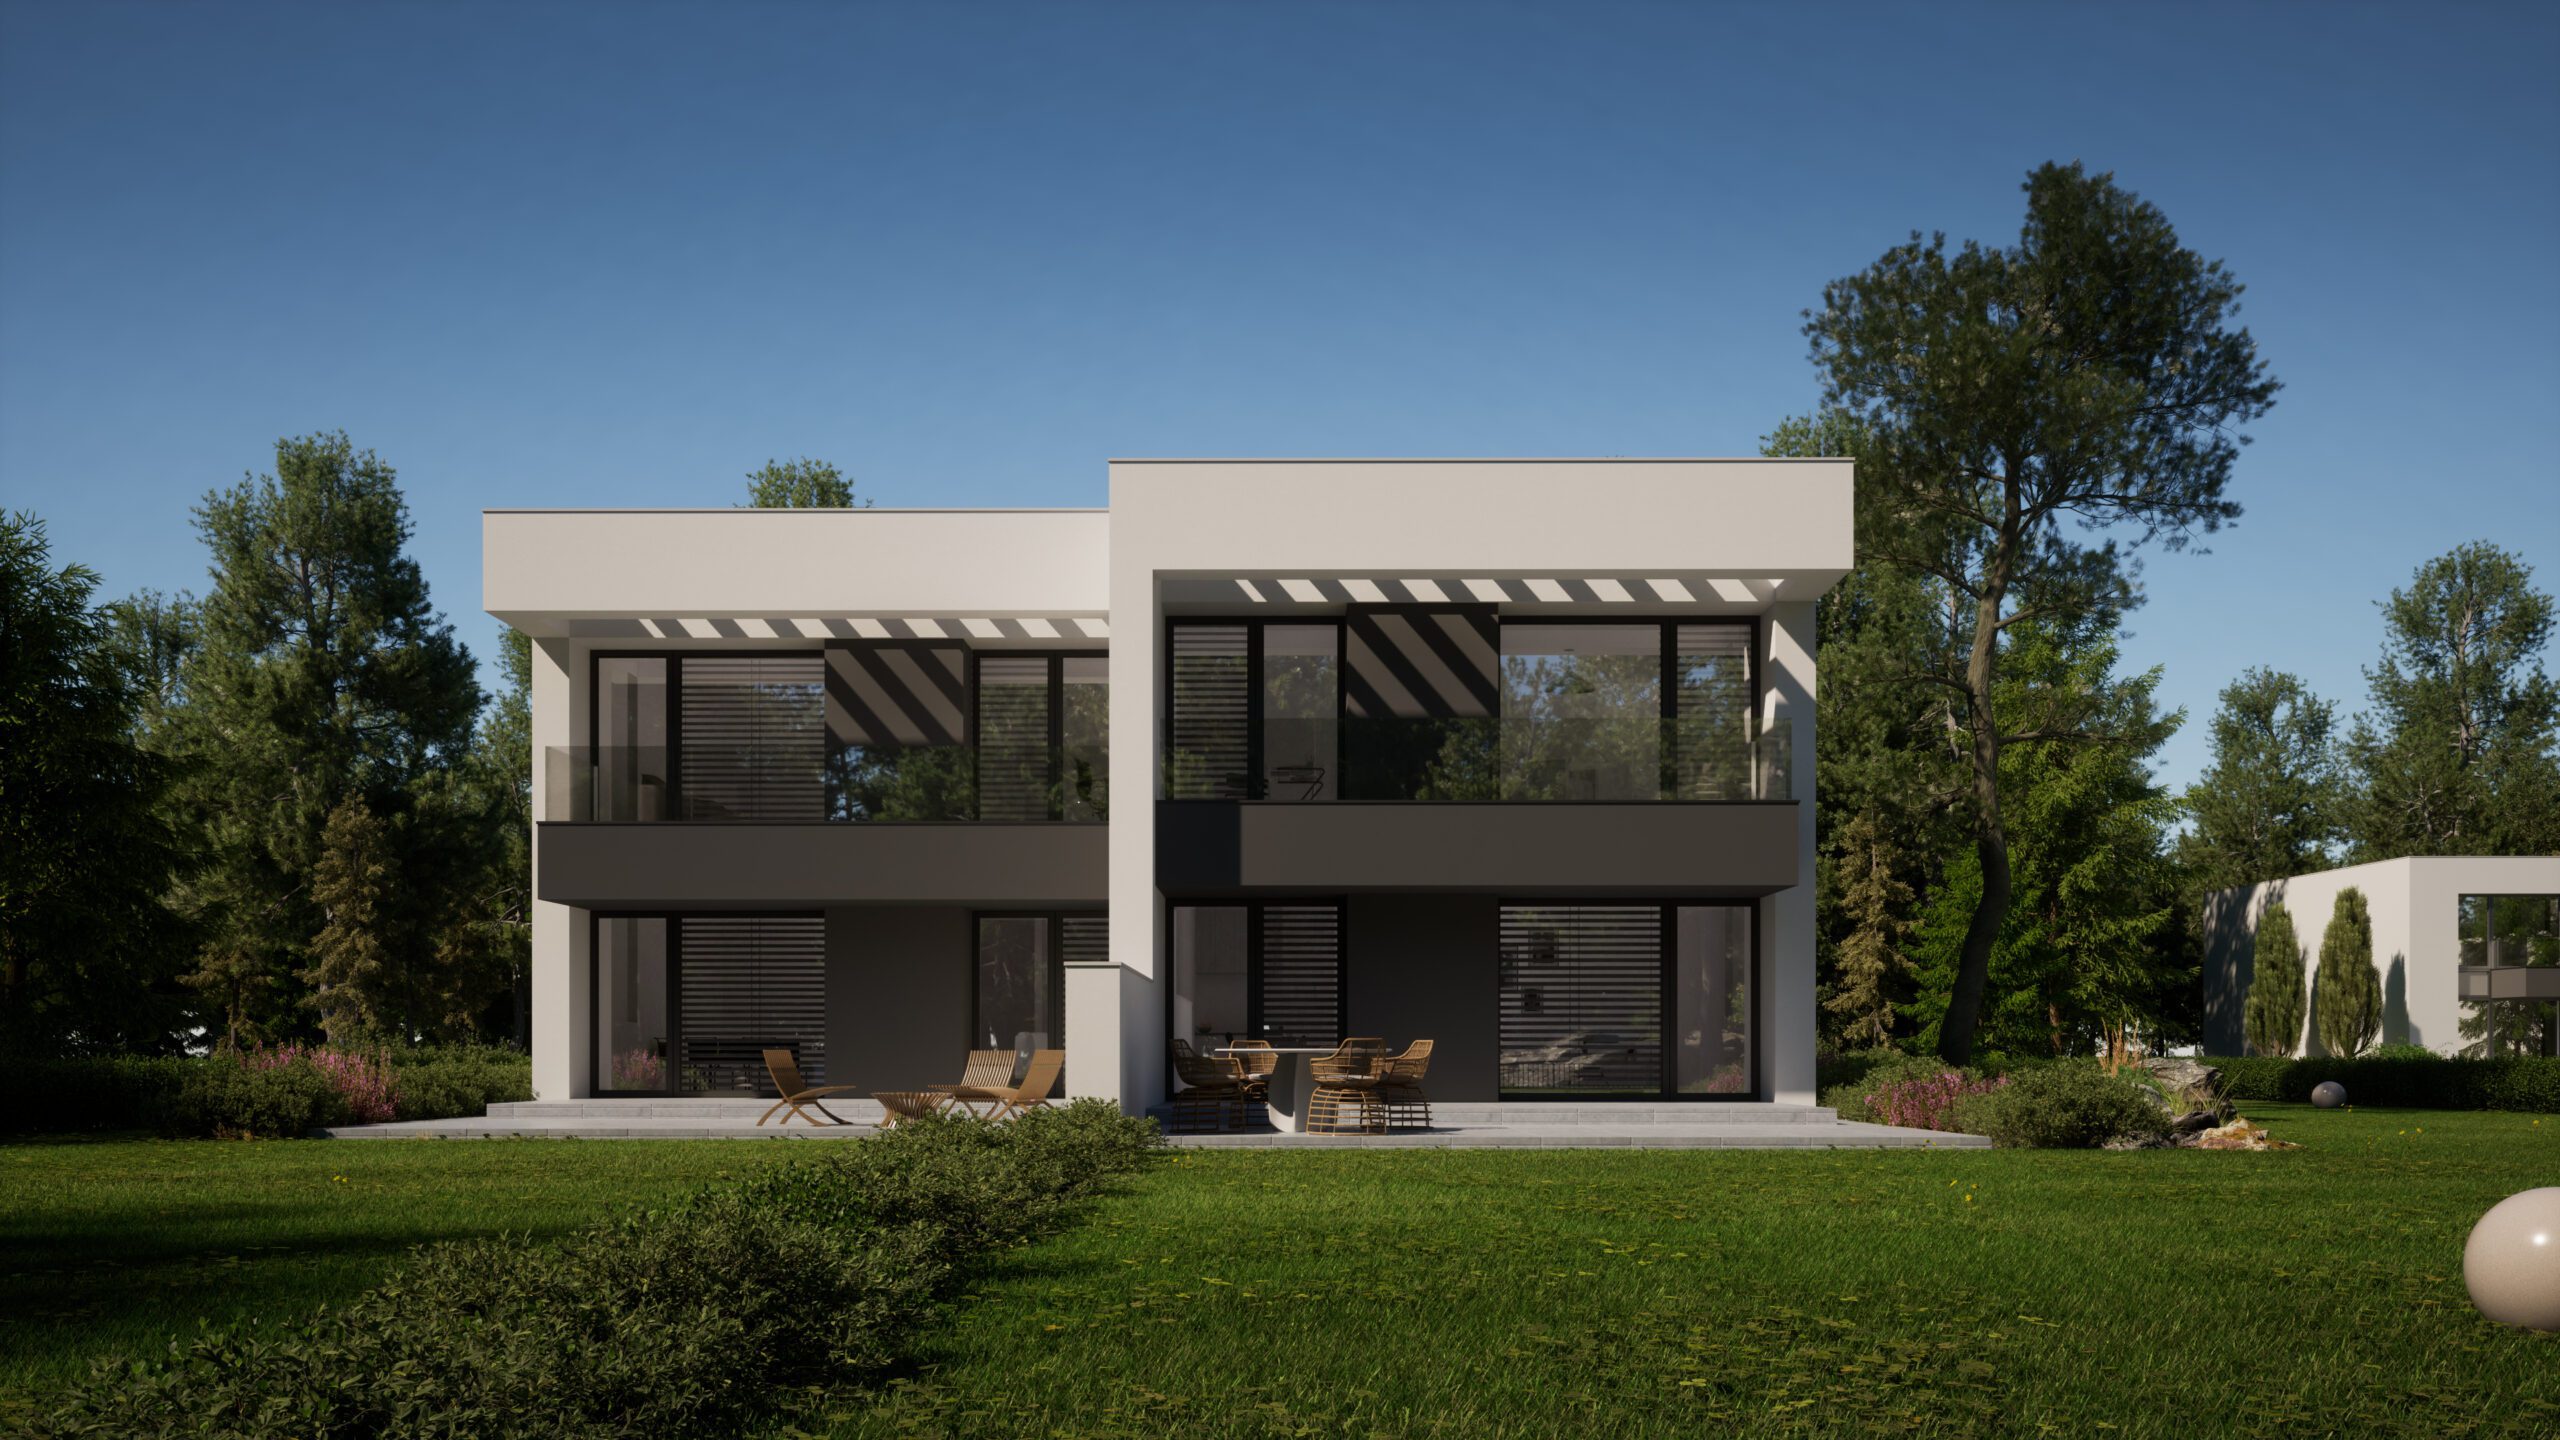 New House 744 B - Jacek Niebieszczański - gotowy projekt domu dla dwóch rodzin.